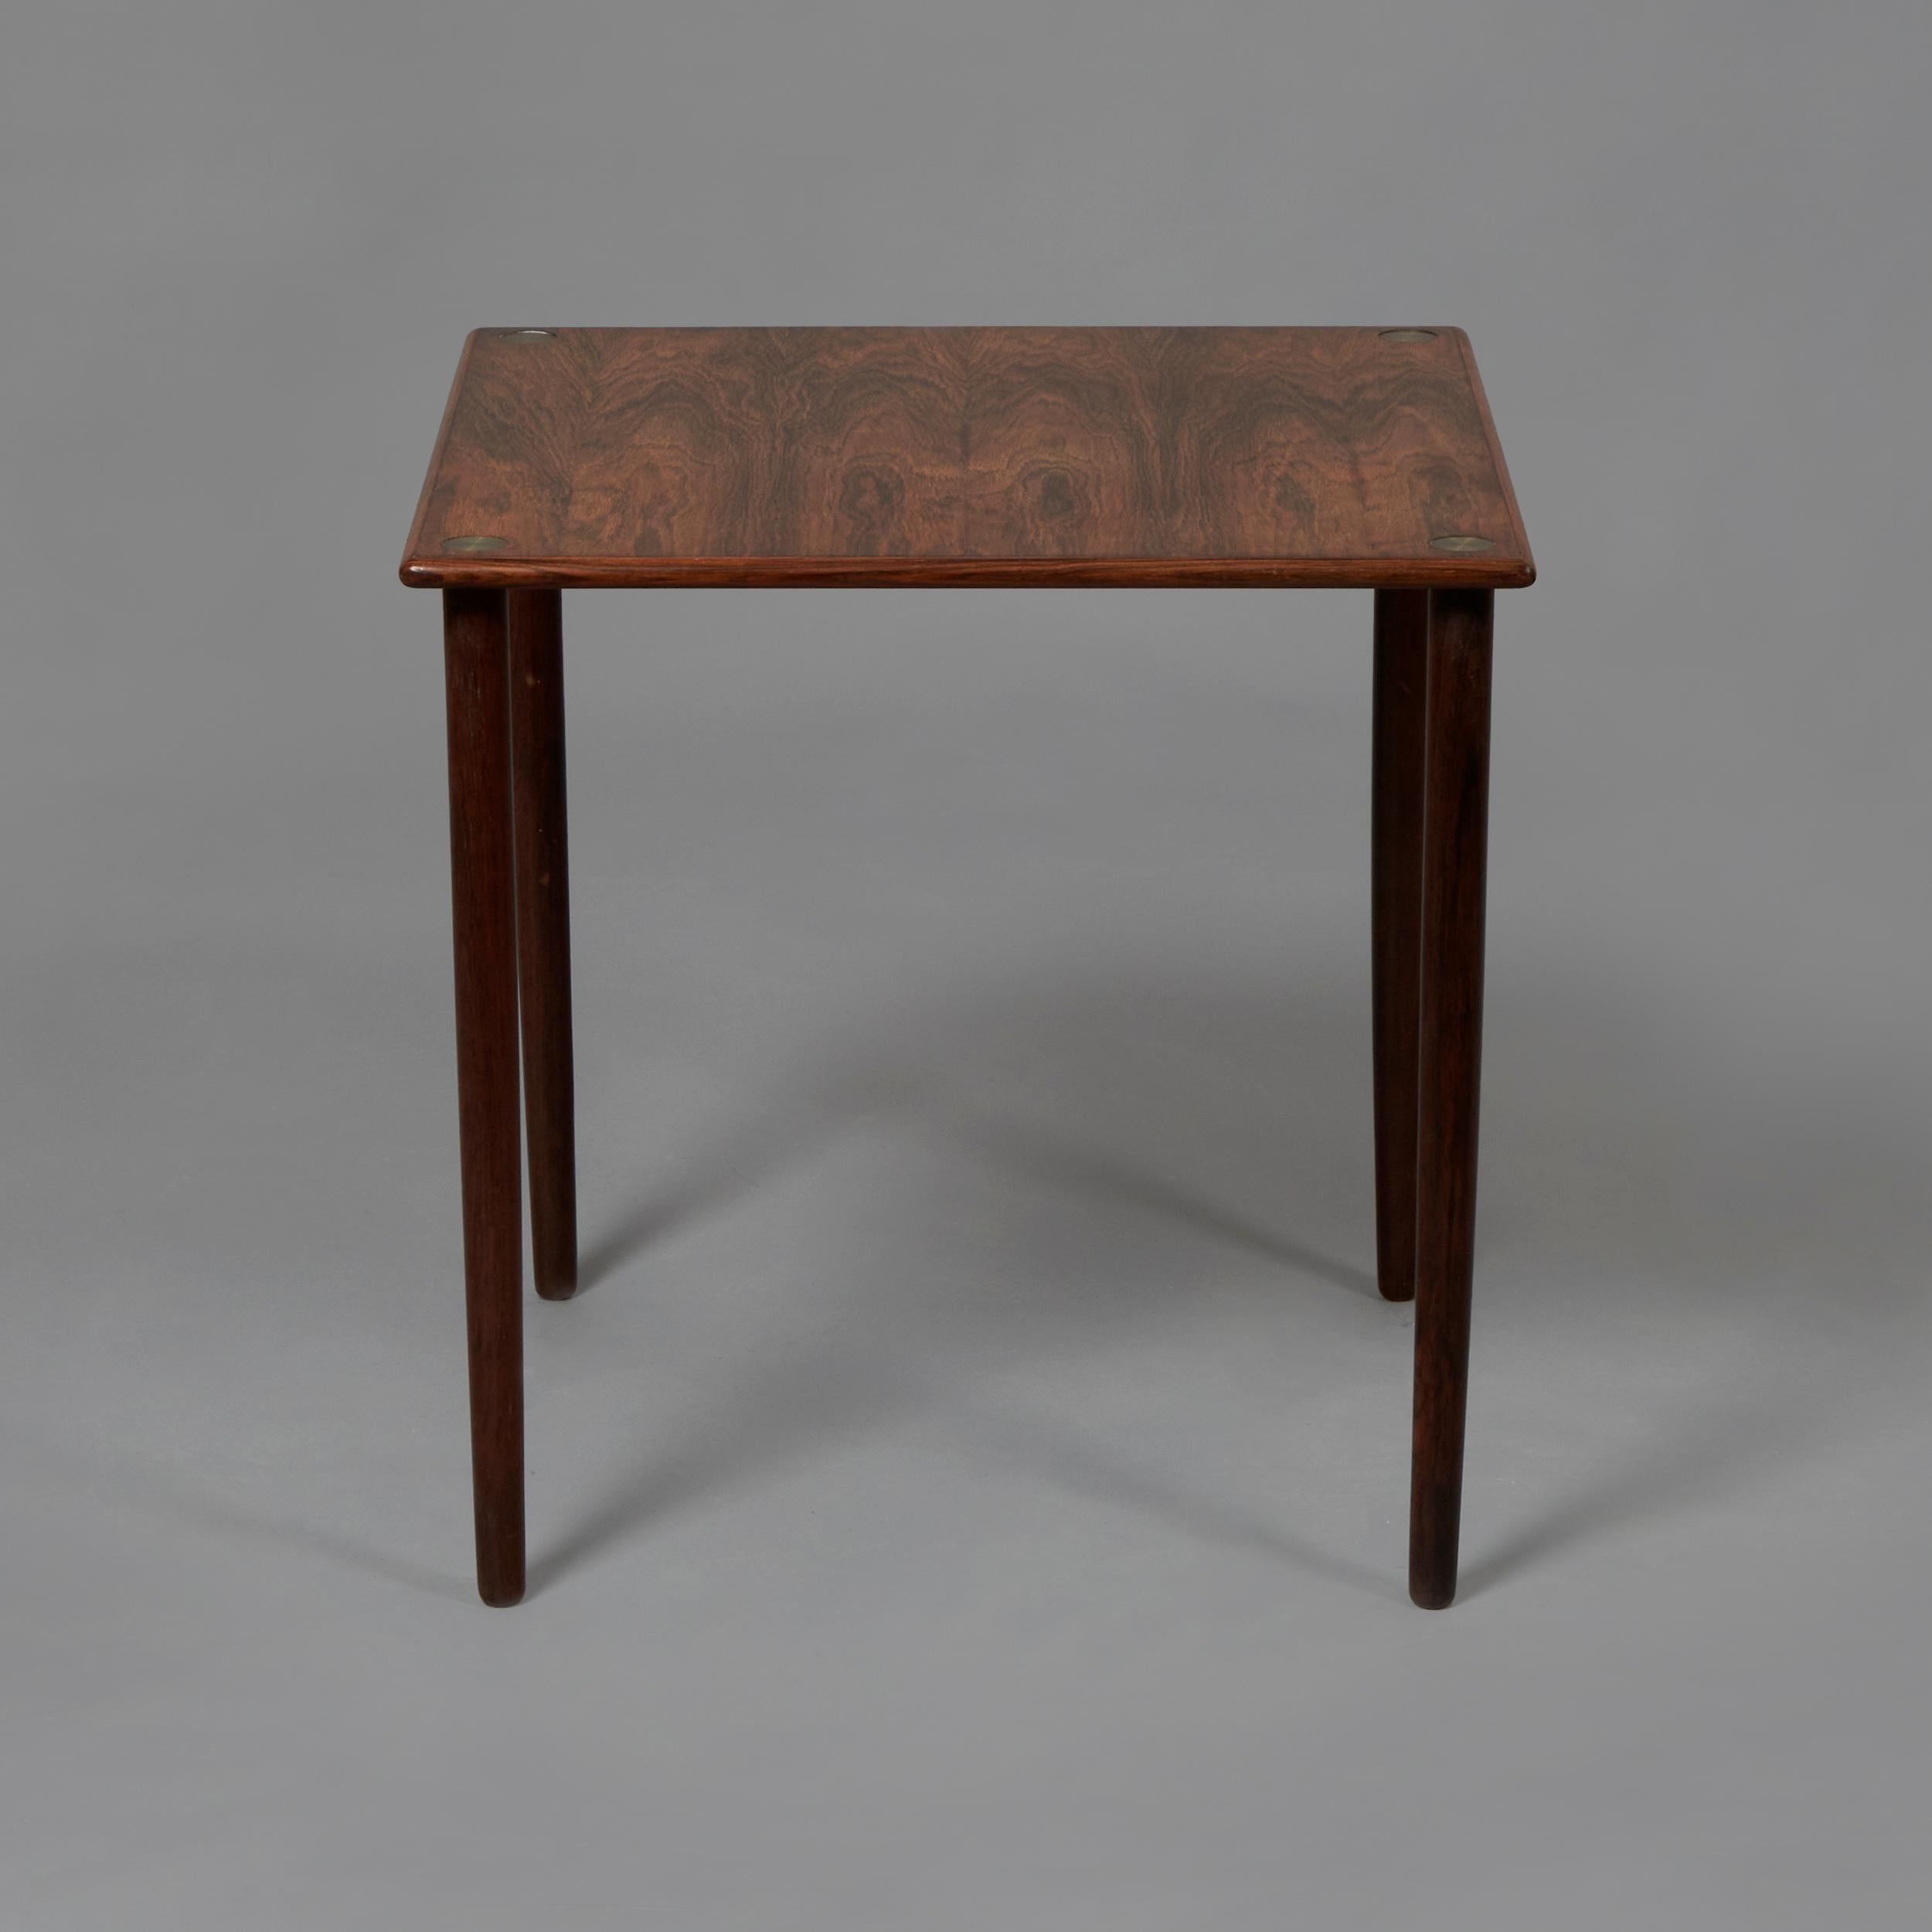 Table d'appoint en bois de rose et détails en aluminium. Modèle 4433 conçu par Georg Petersen pour GP Farum. Excellent état, entièrement restauré. Danemark, années 1960.

